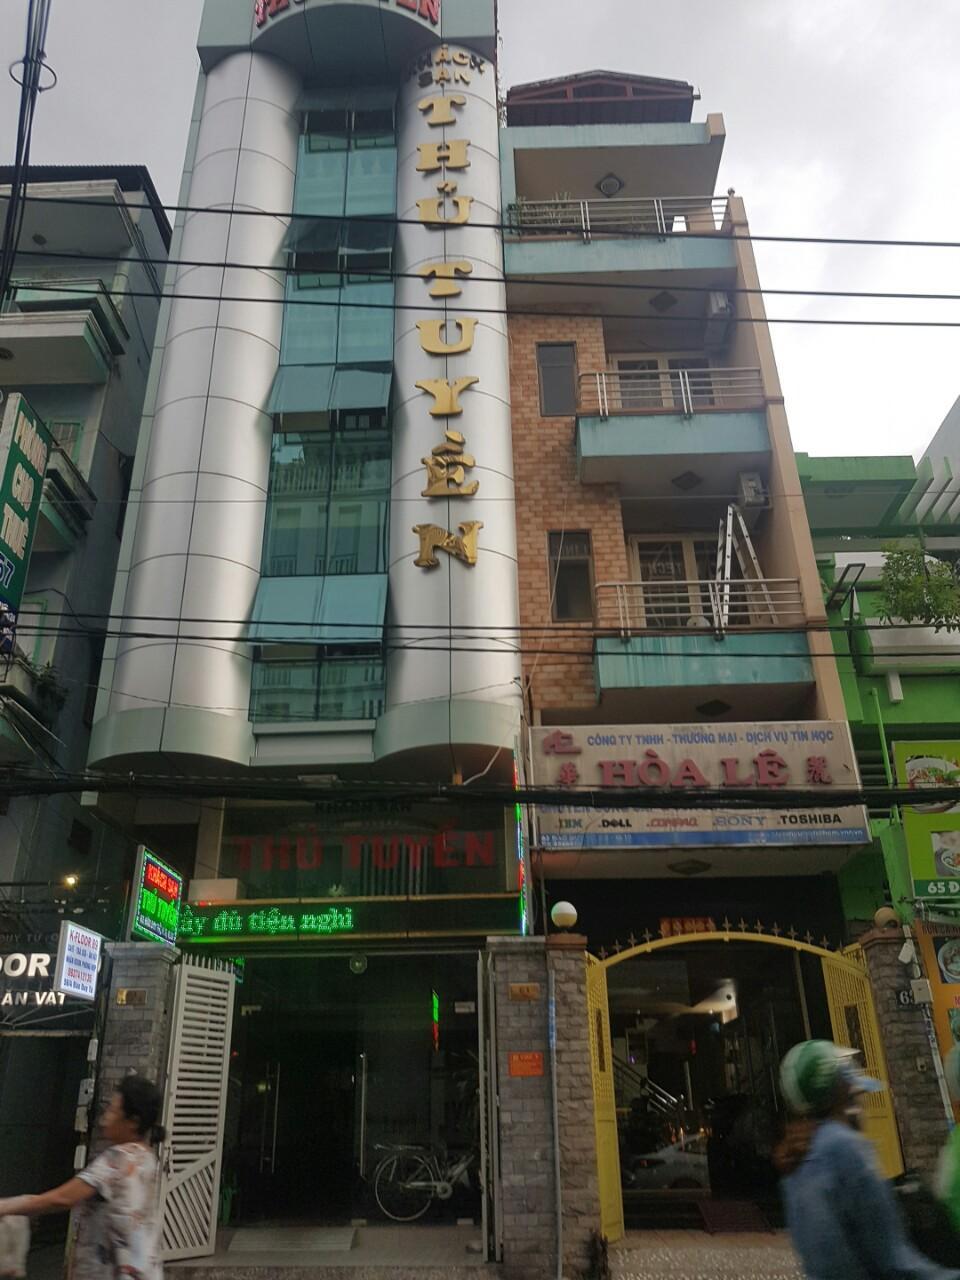  Bán nhà mặt tiền đường Nguyễn Trãi, P7, Q5 (5m x 14,5m) 3 lầu, giá 40 tỷ TL